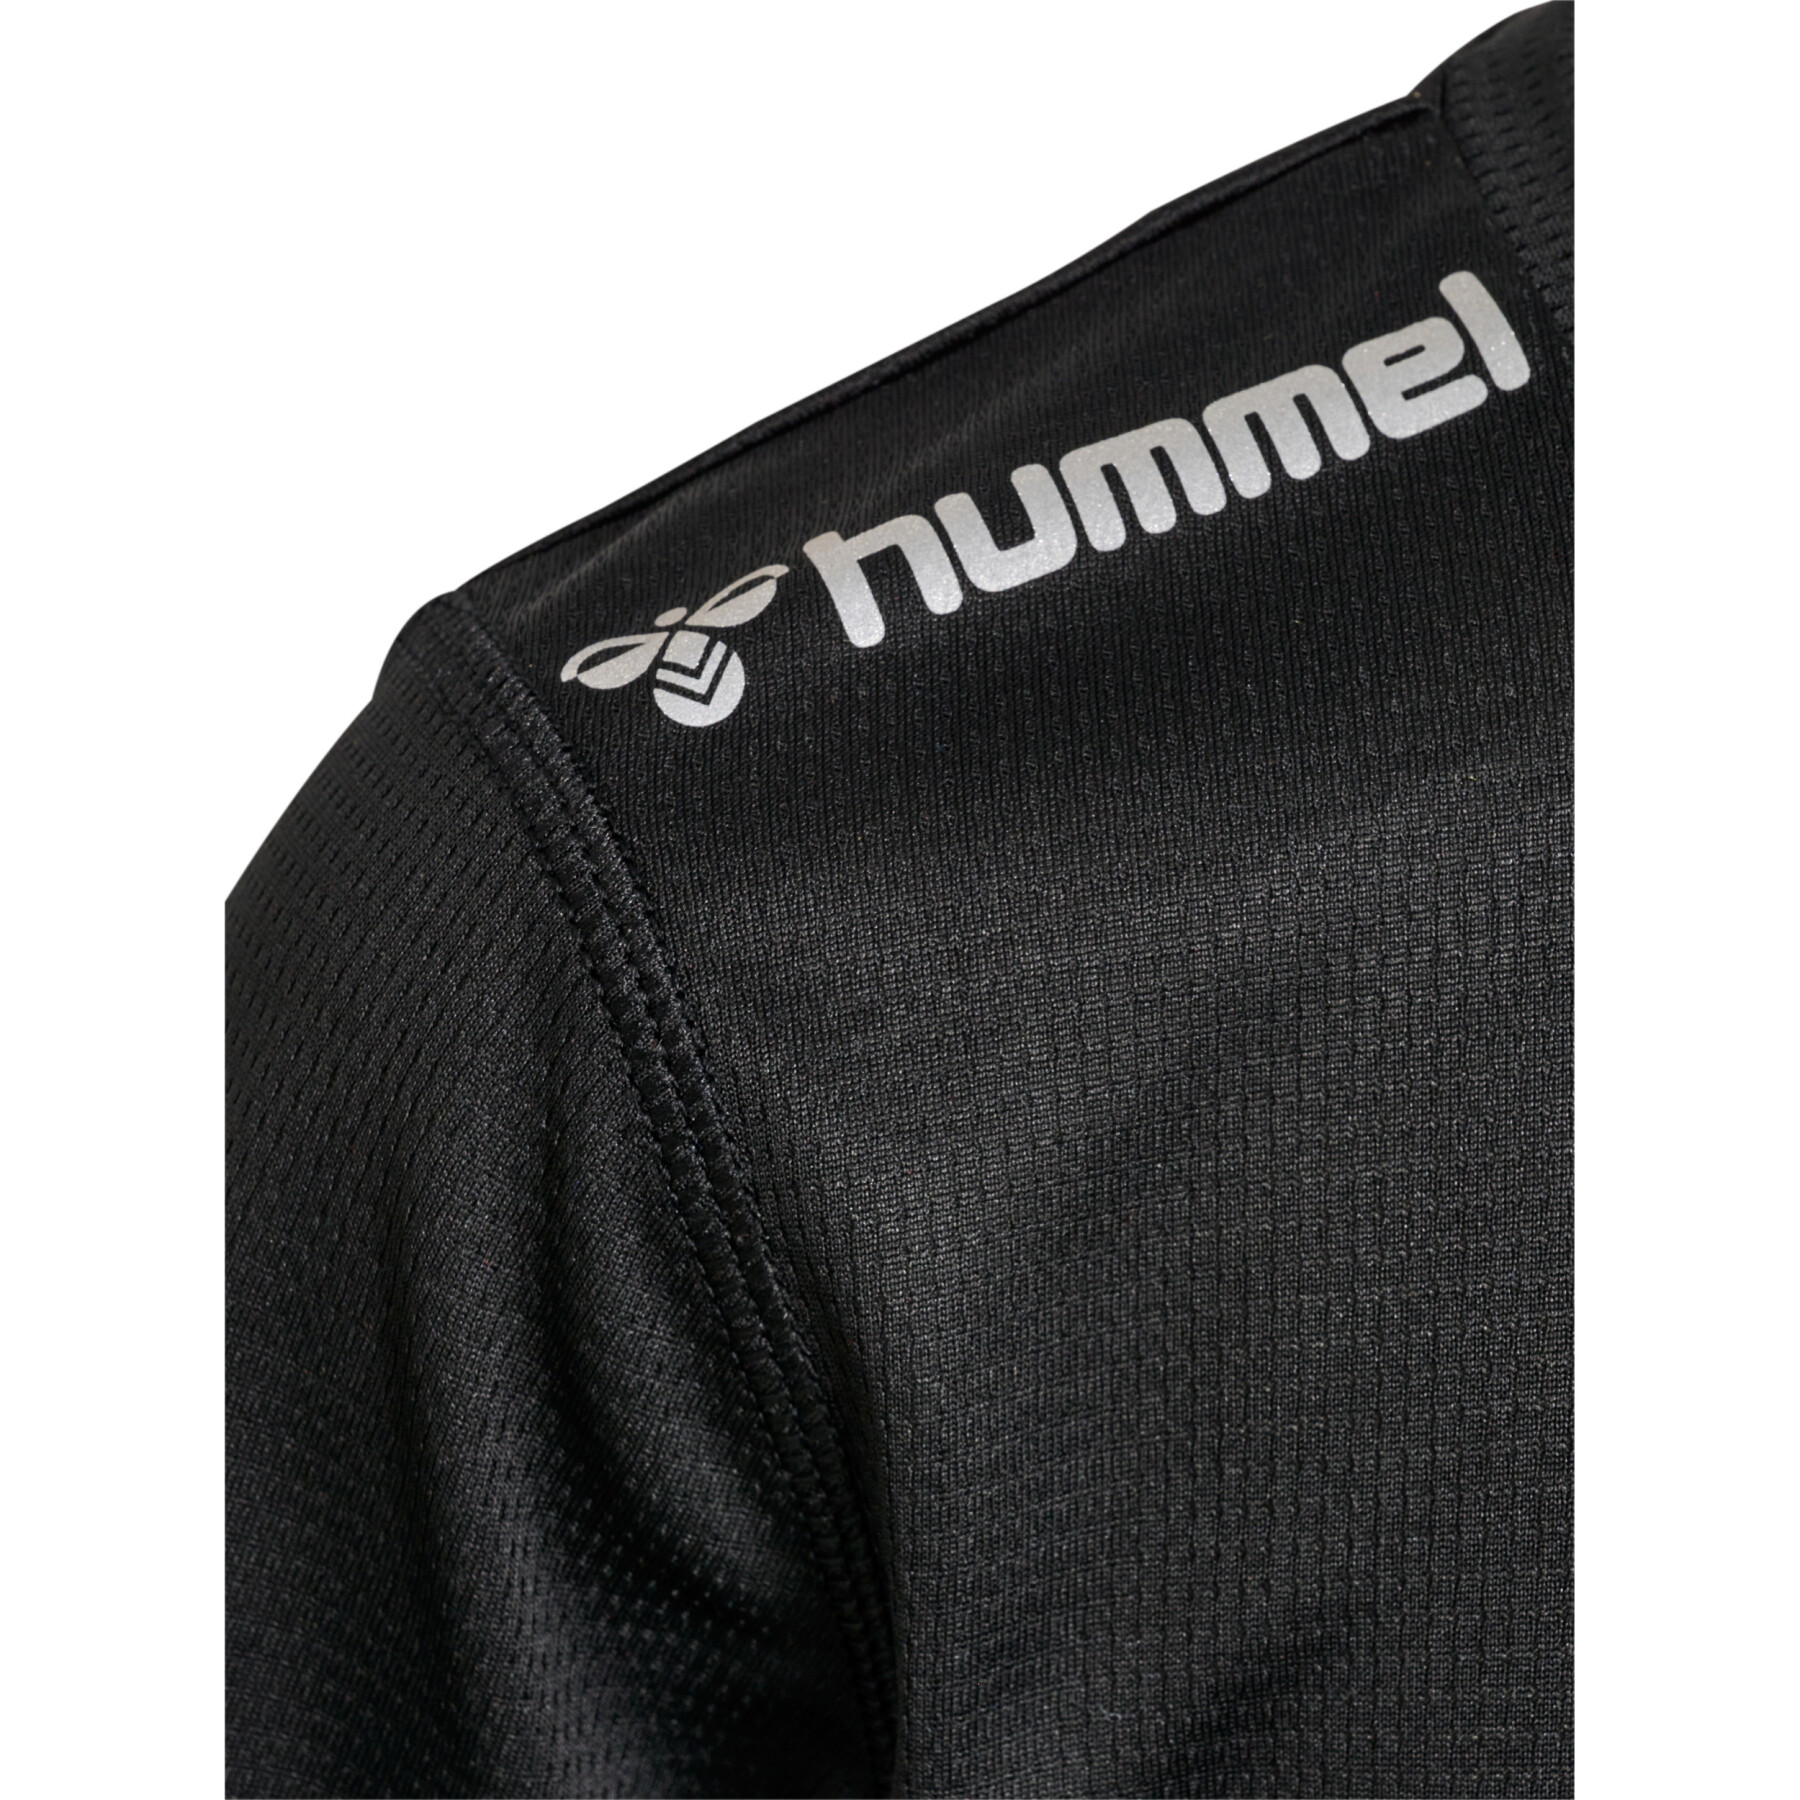 Children's jersey Hummel